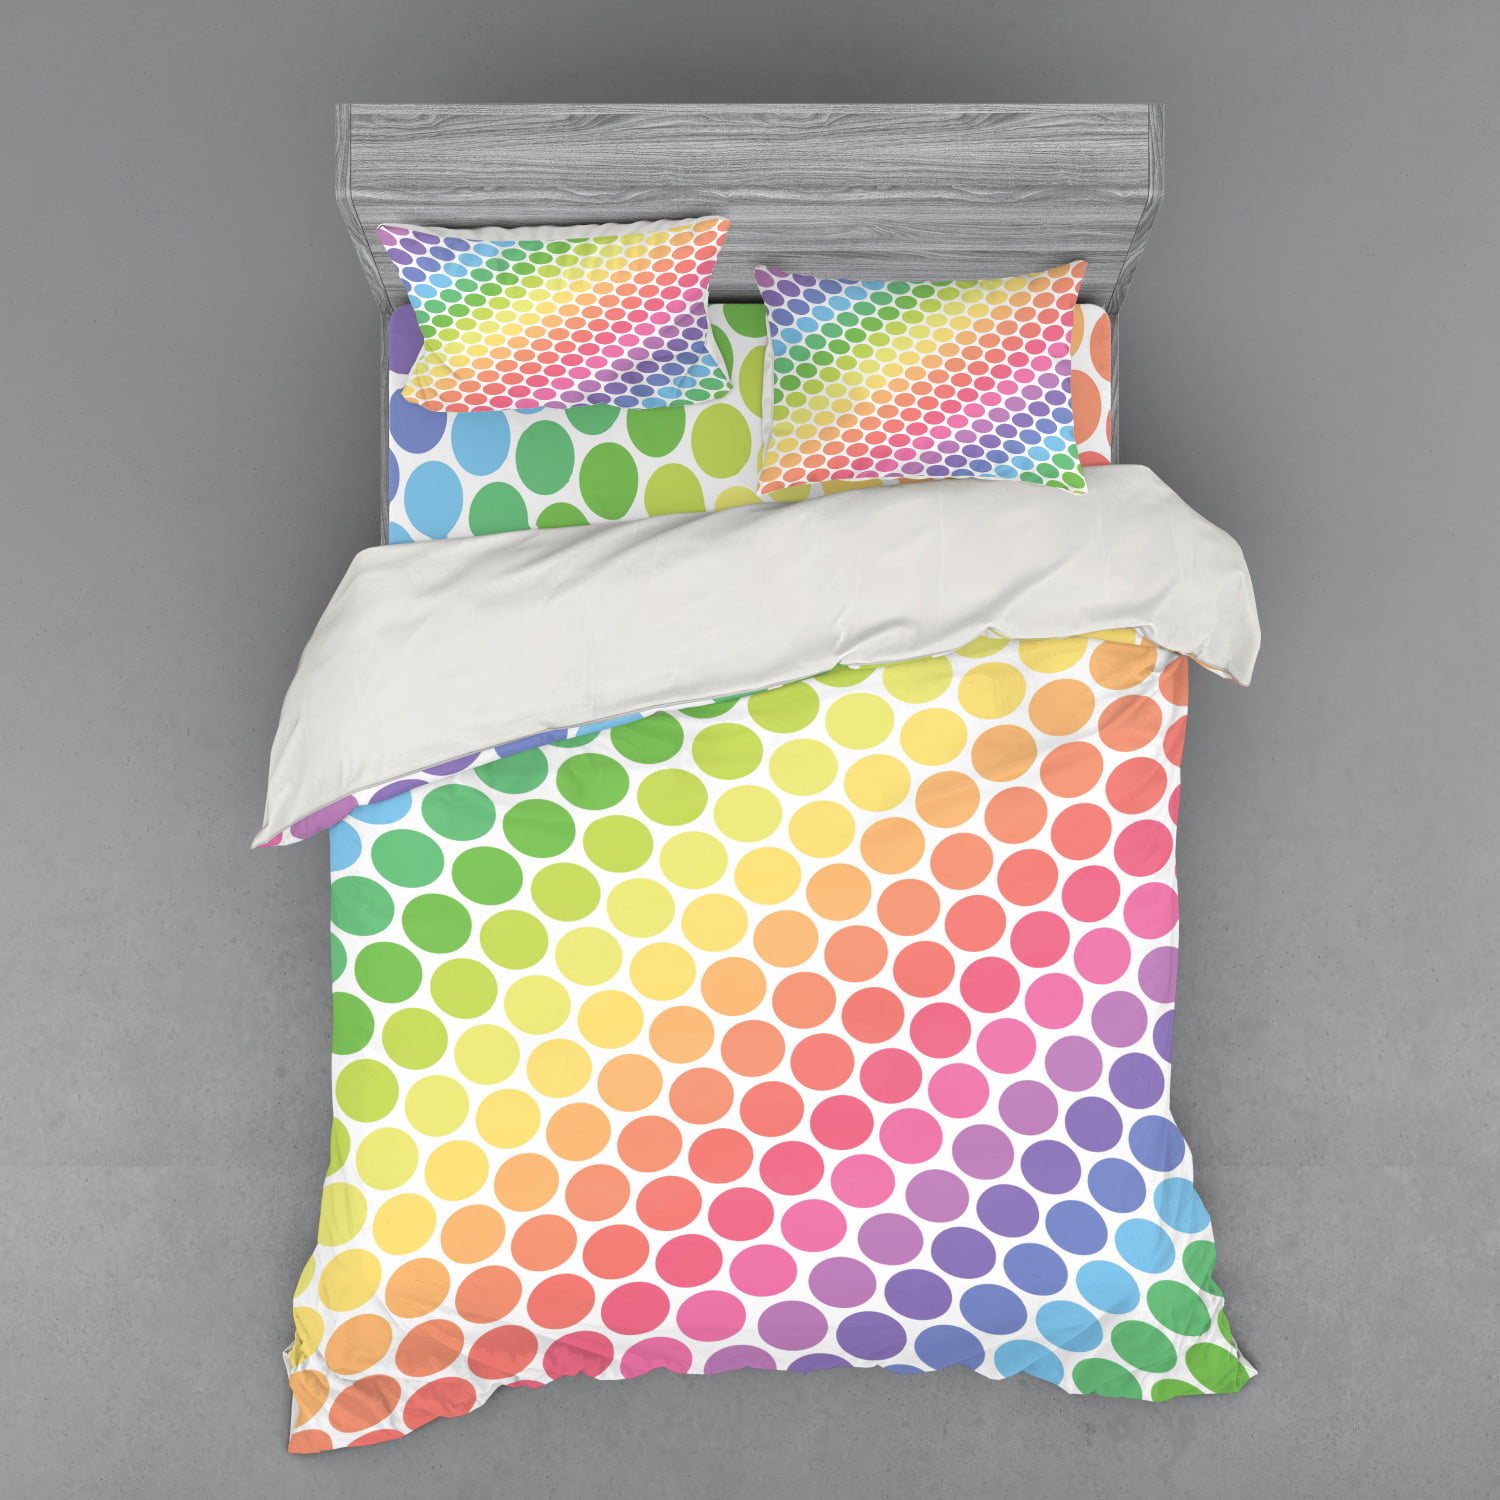 Colorful Polka Dot Twin Bed Sheet Set 